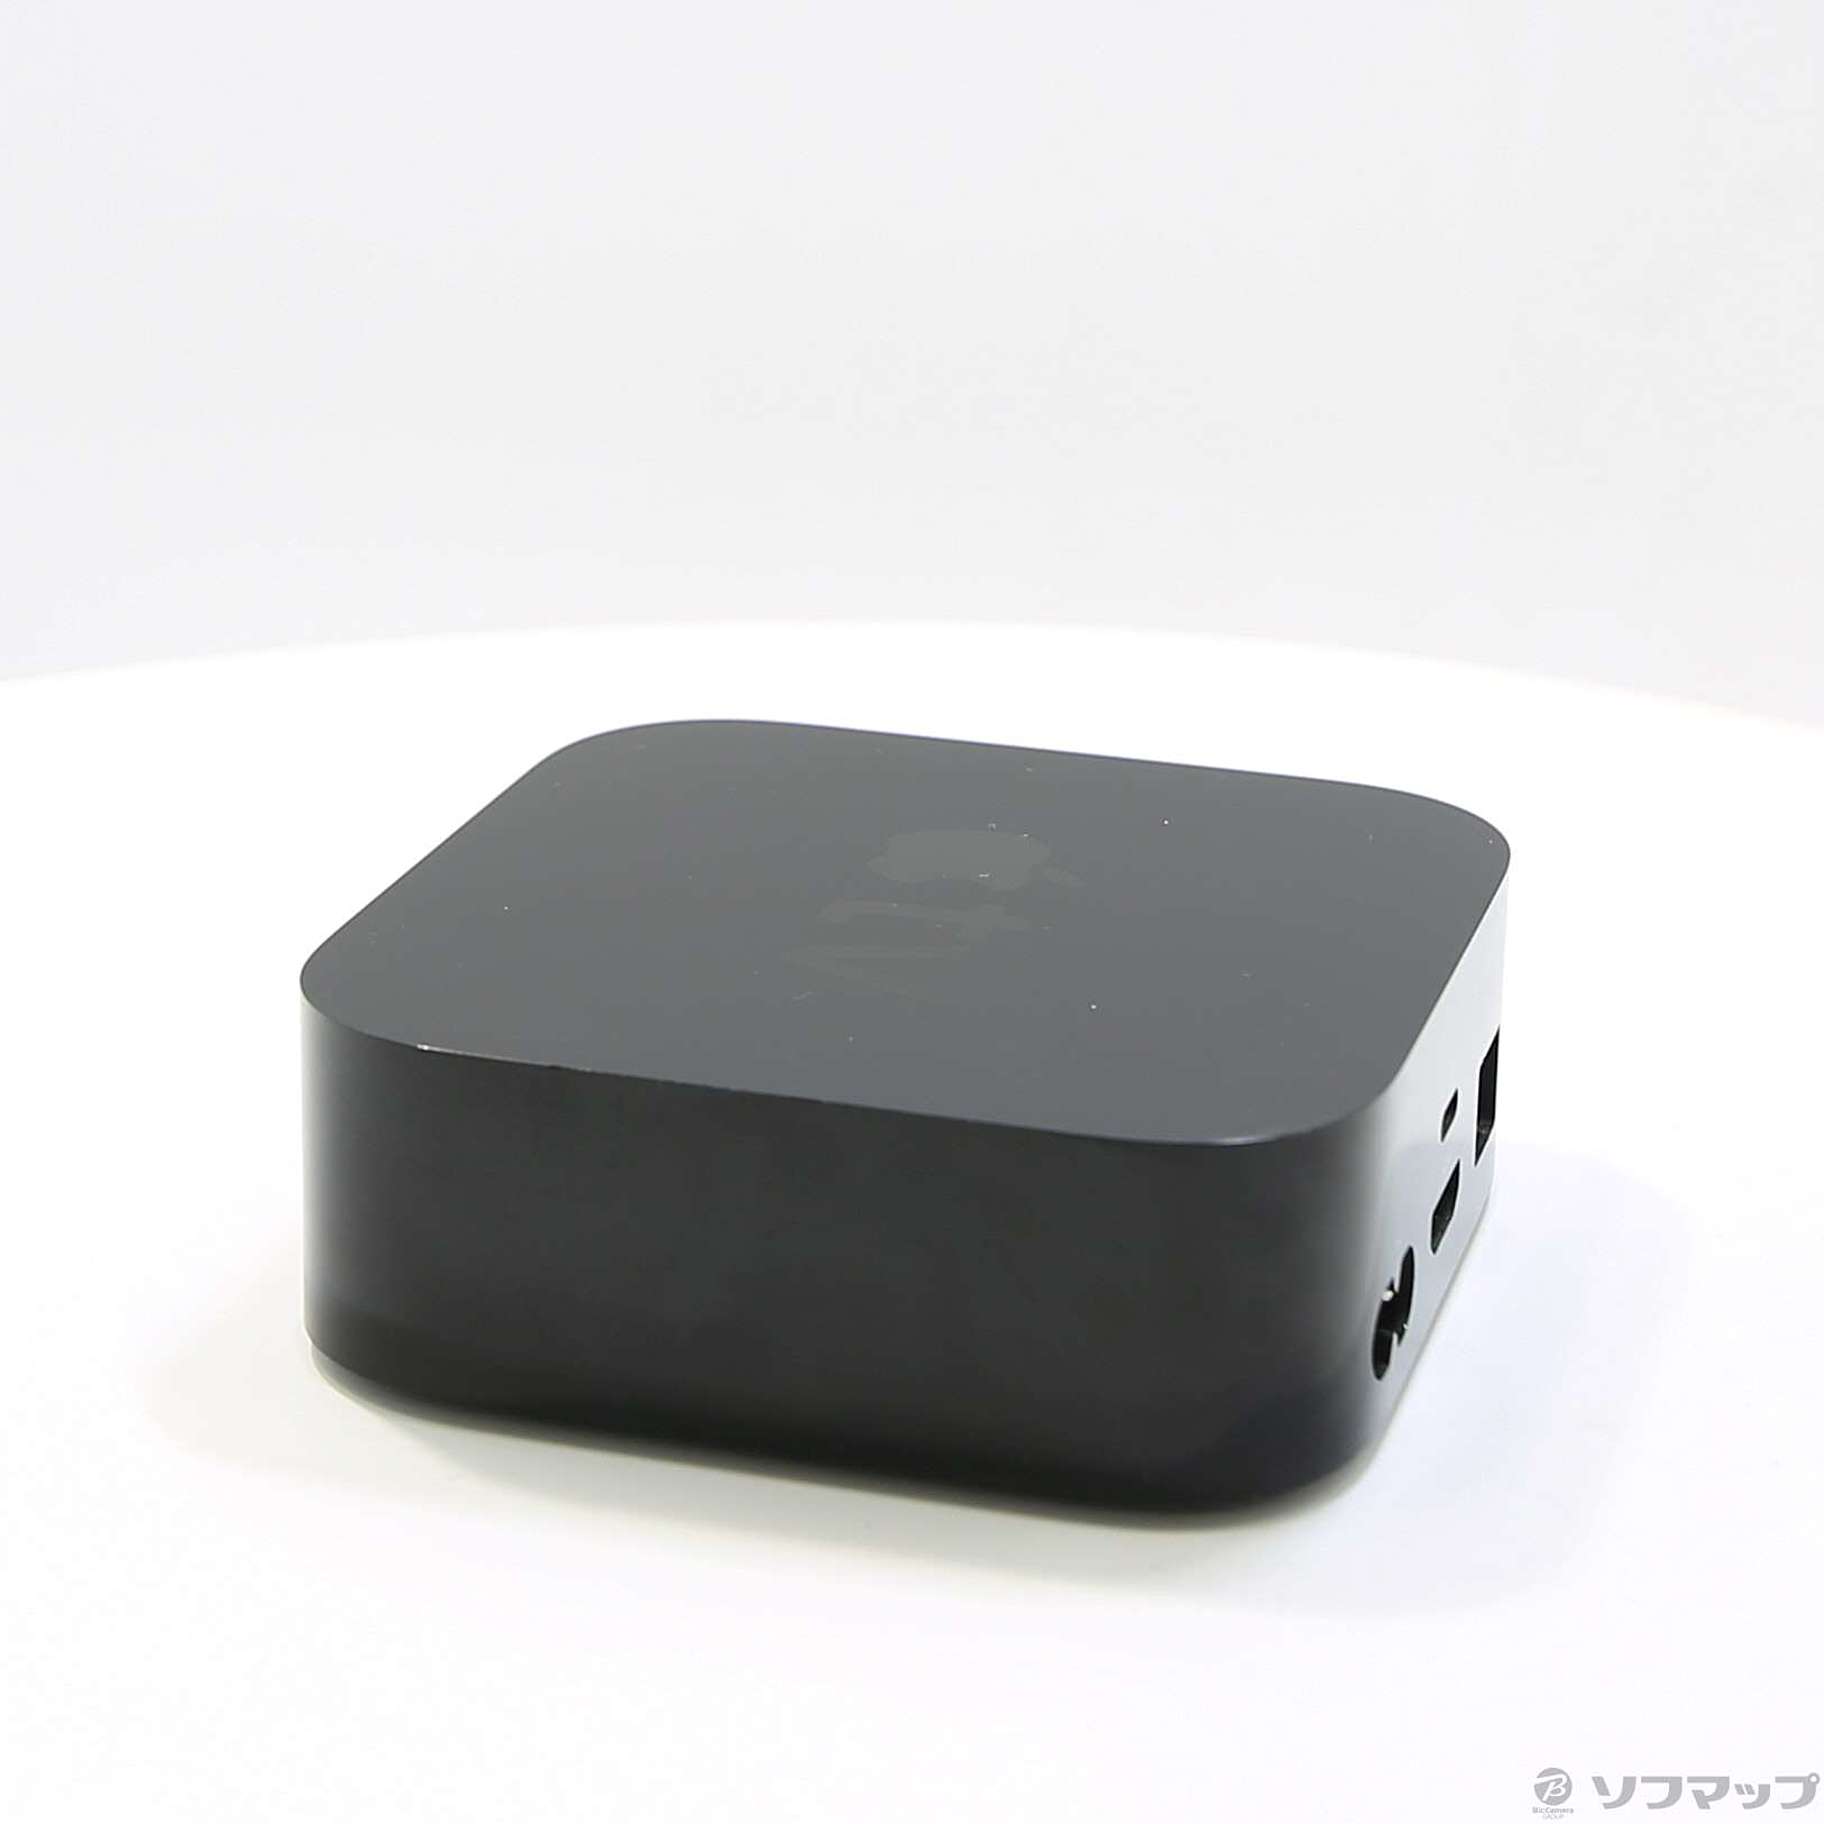 【美品】Apple TV 64GB MLNC2J/A 第4世代